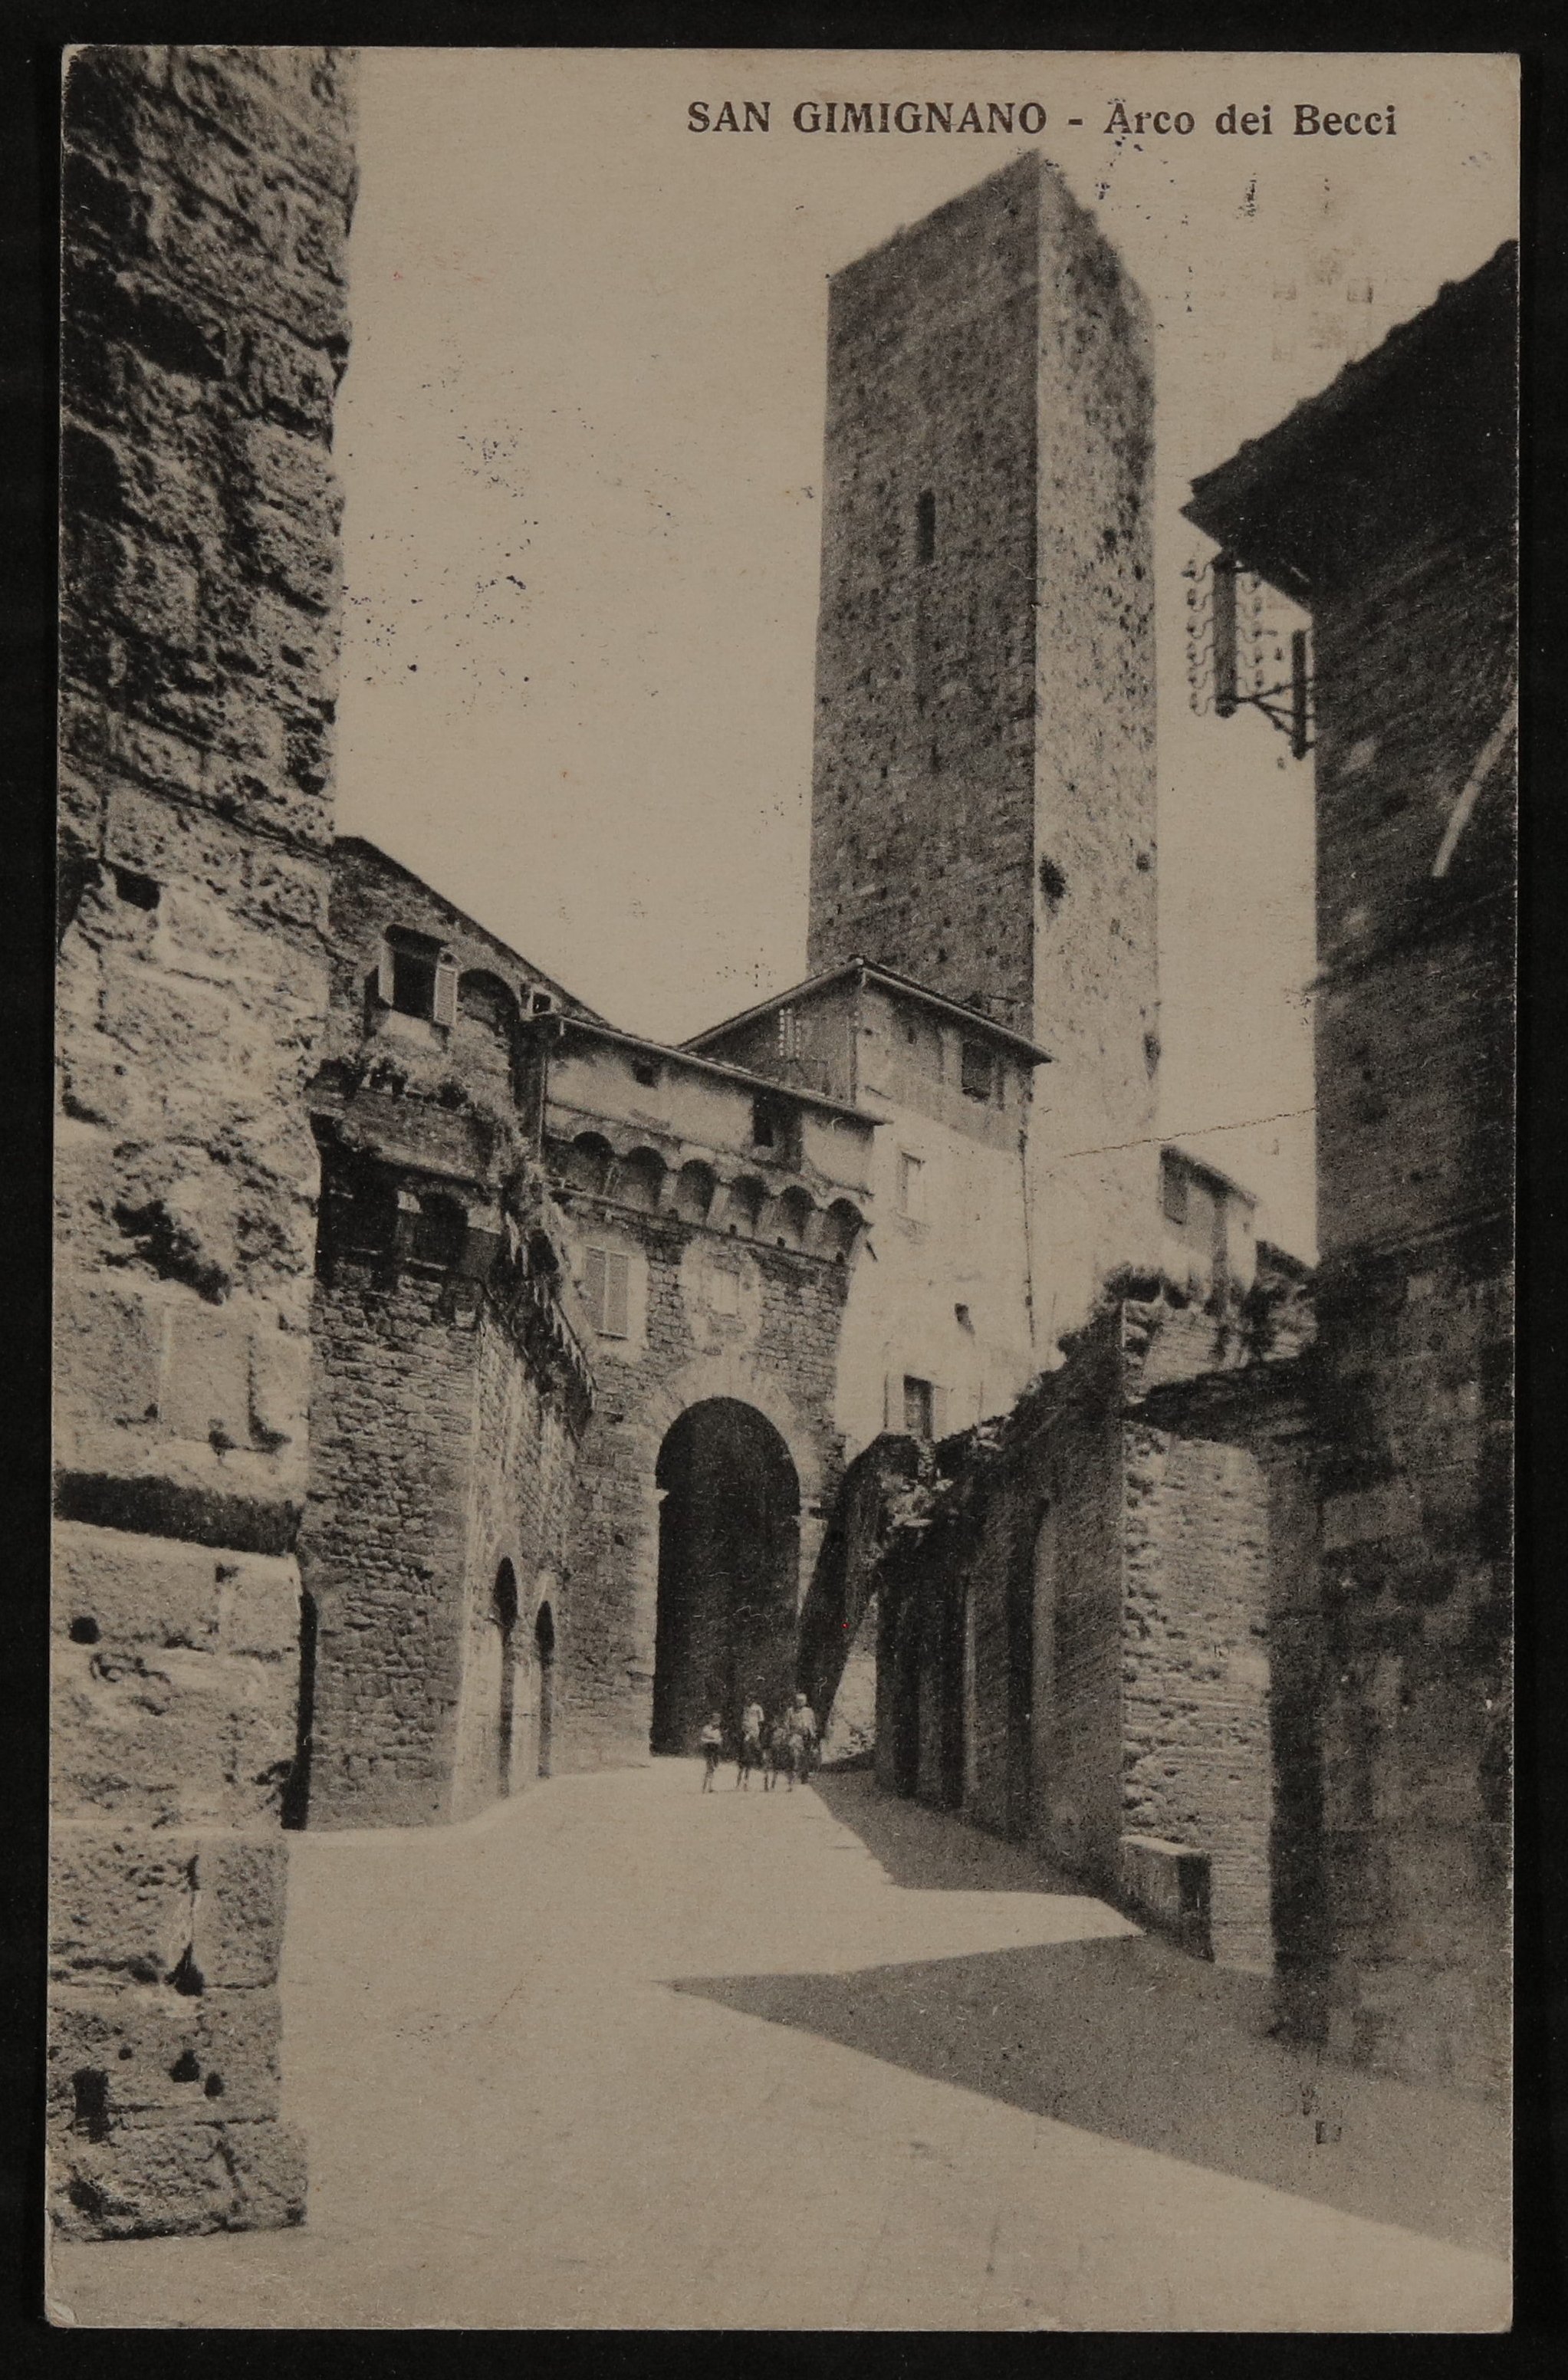 Ansichtskarte von Hofmannsthal an Gabriele Oppenheimer aus San Gimignano mit Ansicht des Arco dei Becci (Freies Deutsches Hochstift / Frankfurter Goethe-Museum CC BY-NC-SA)